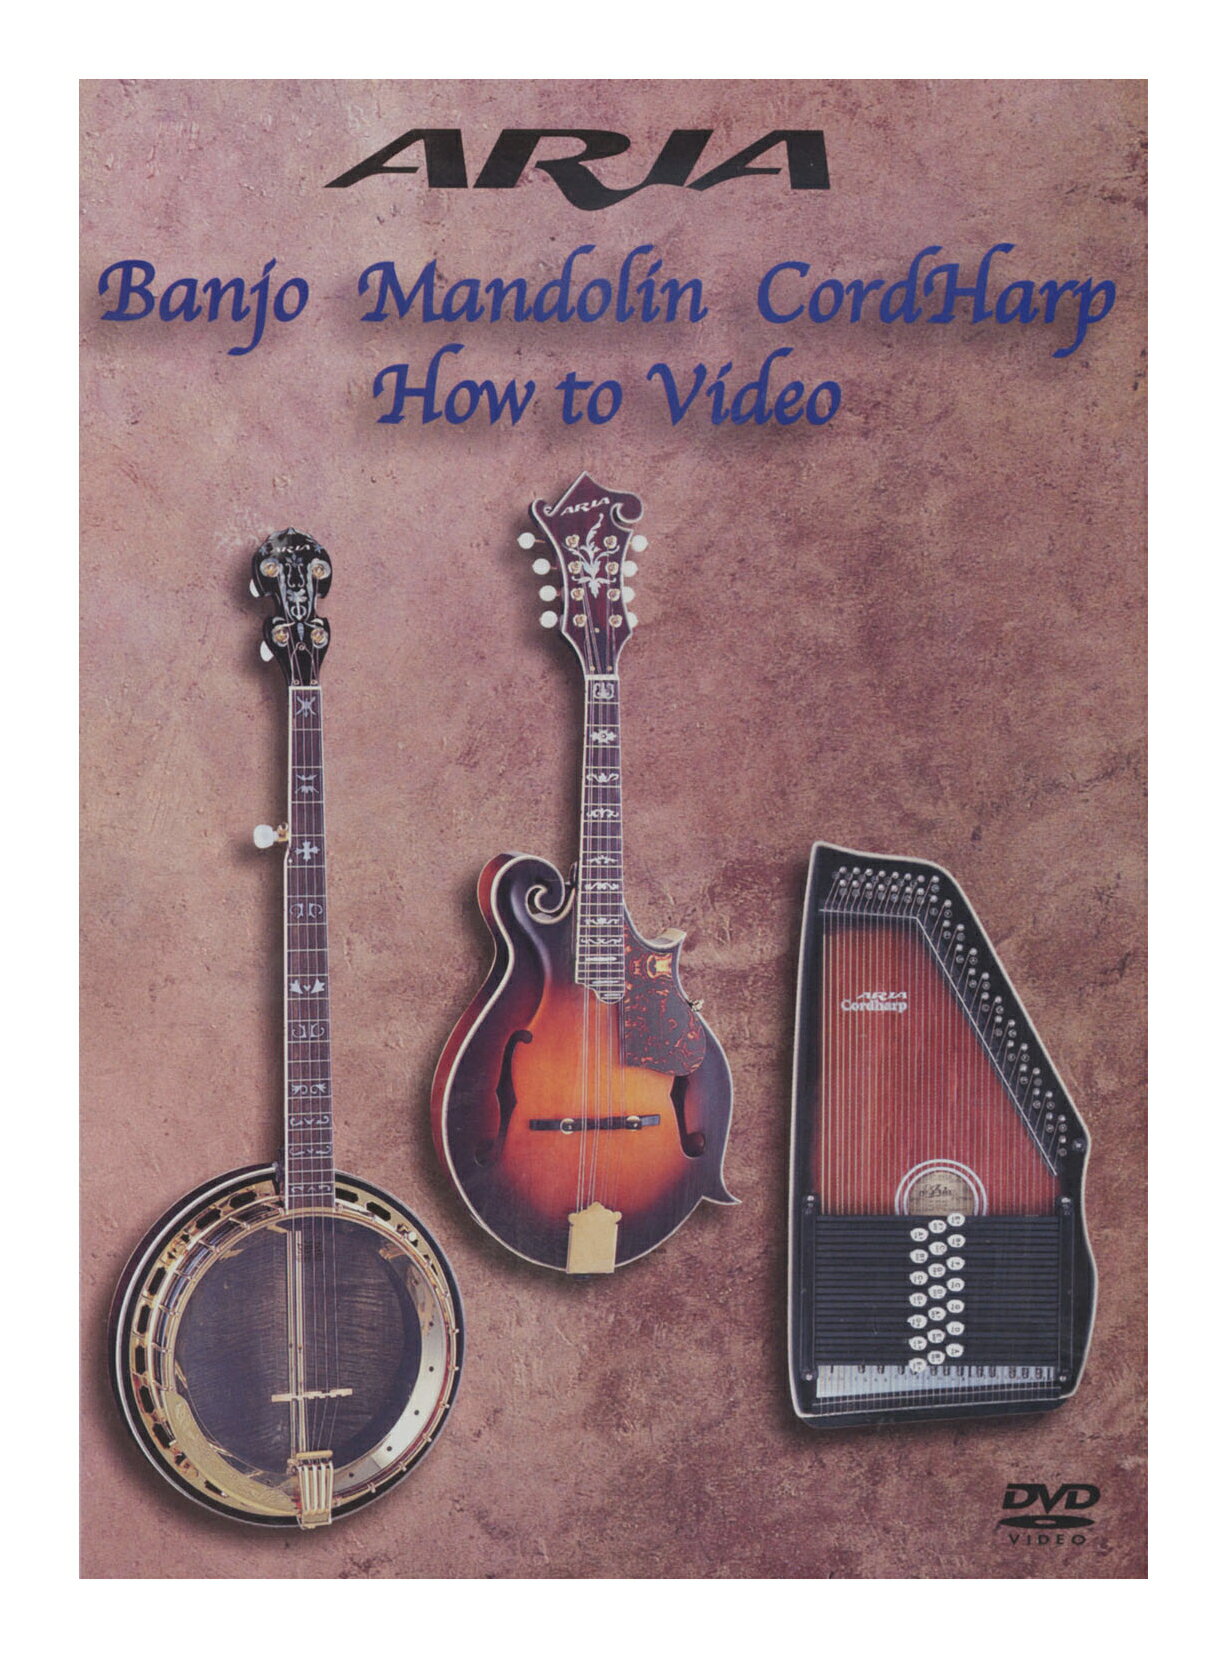 【メール便・送料無料・代引不可】ARIA 5弦バンジョー/マンドリン/コードハープ入門 教則DVD Banjo Mandolin Cord Ha…